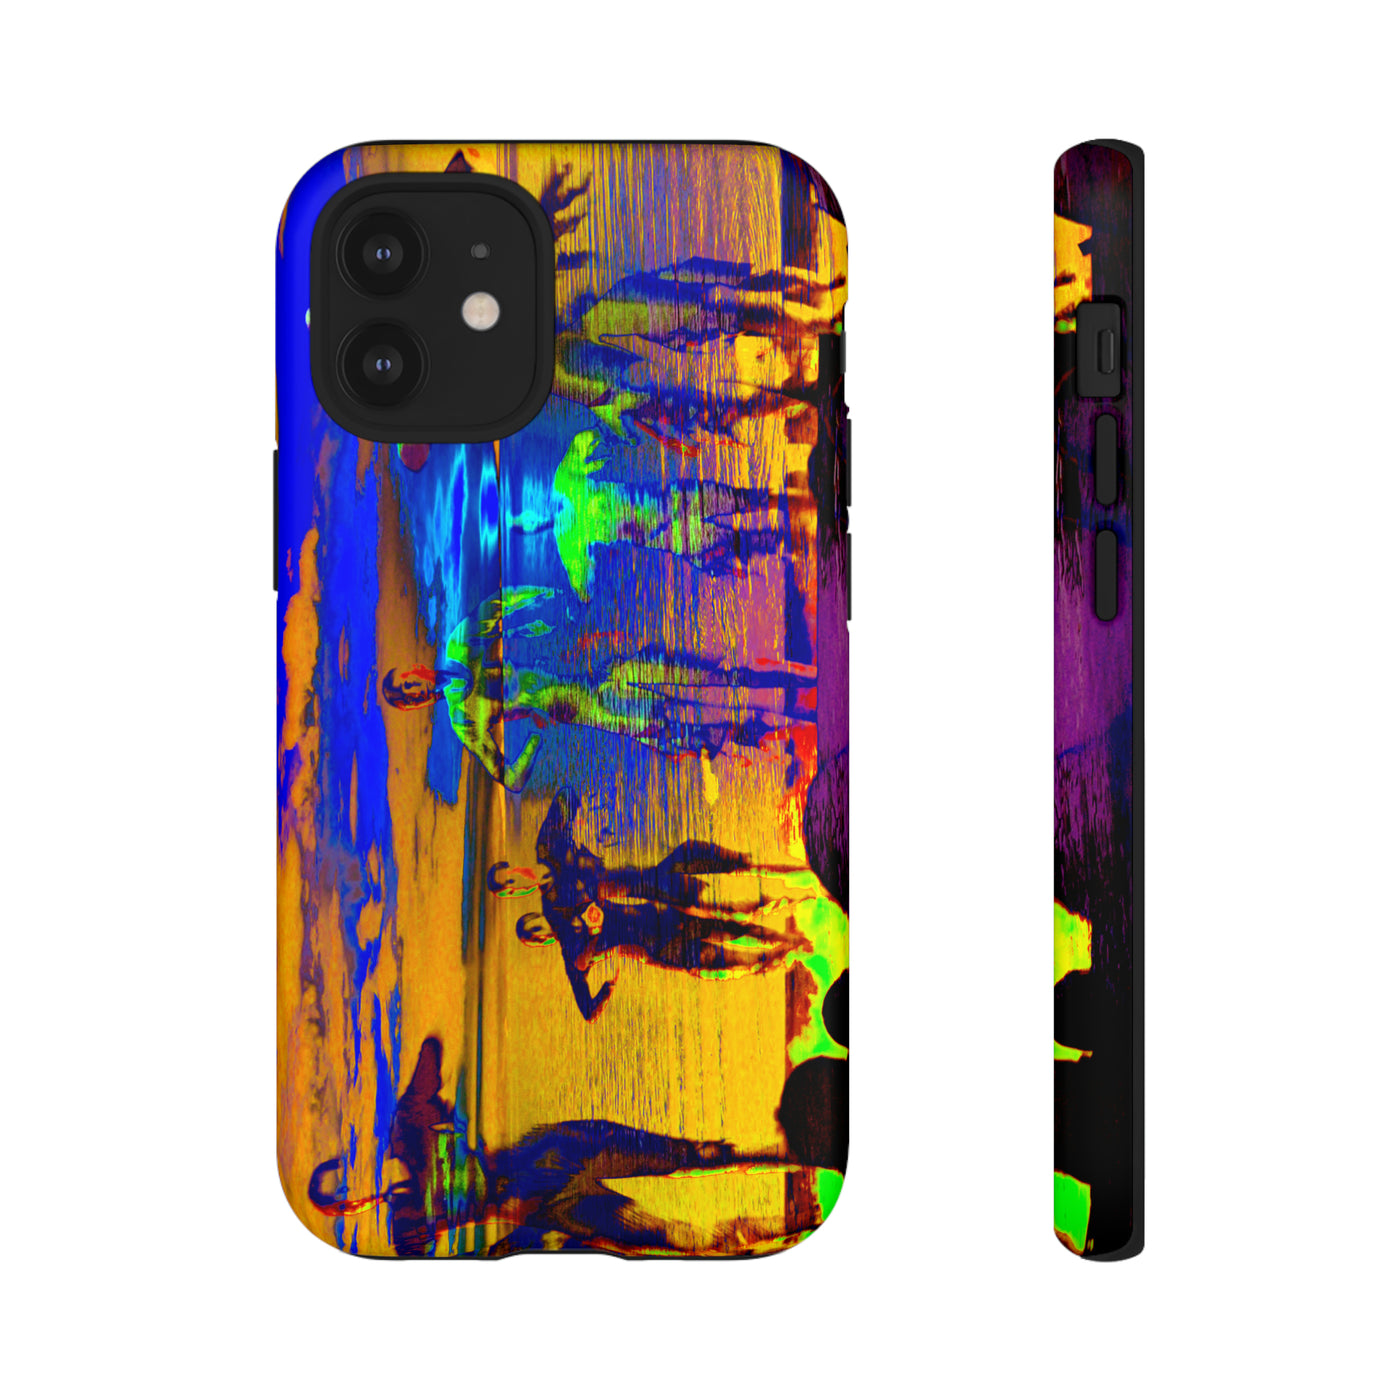 Cute IPhone Case | iPhone 15 Case | iPhone 15 Pro Max Case, Iphone 14 Case, Iphone 14 Pro Max Case IPhone Case for Art Lovers, Sunset Dance Blue Yellow